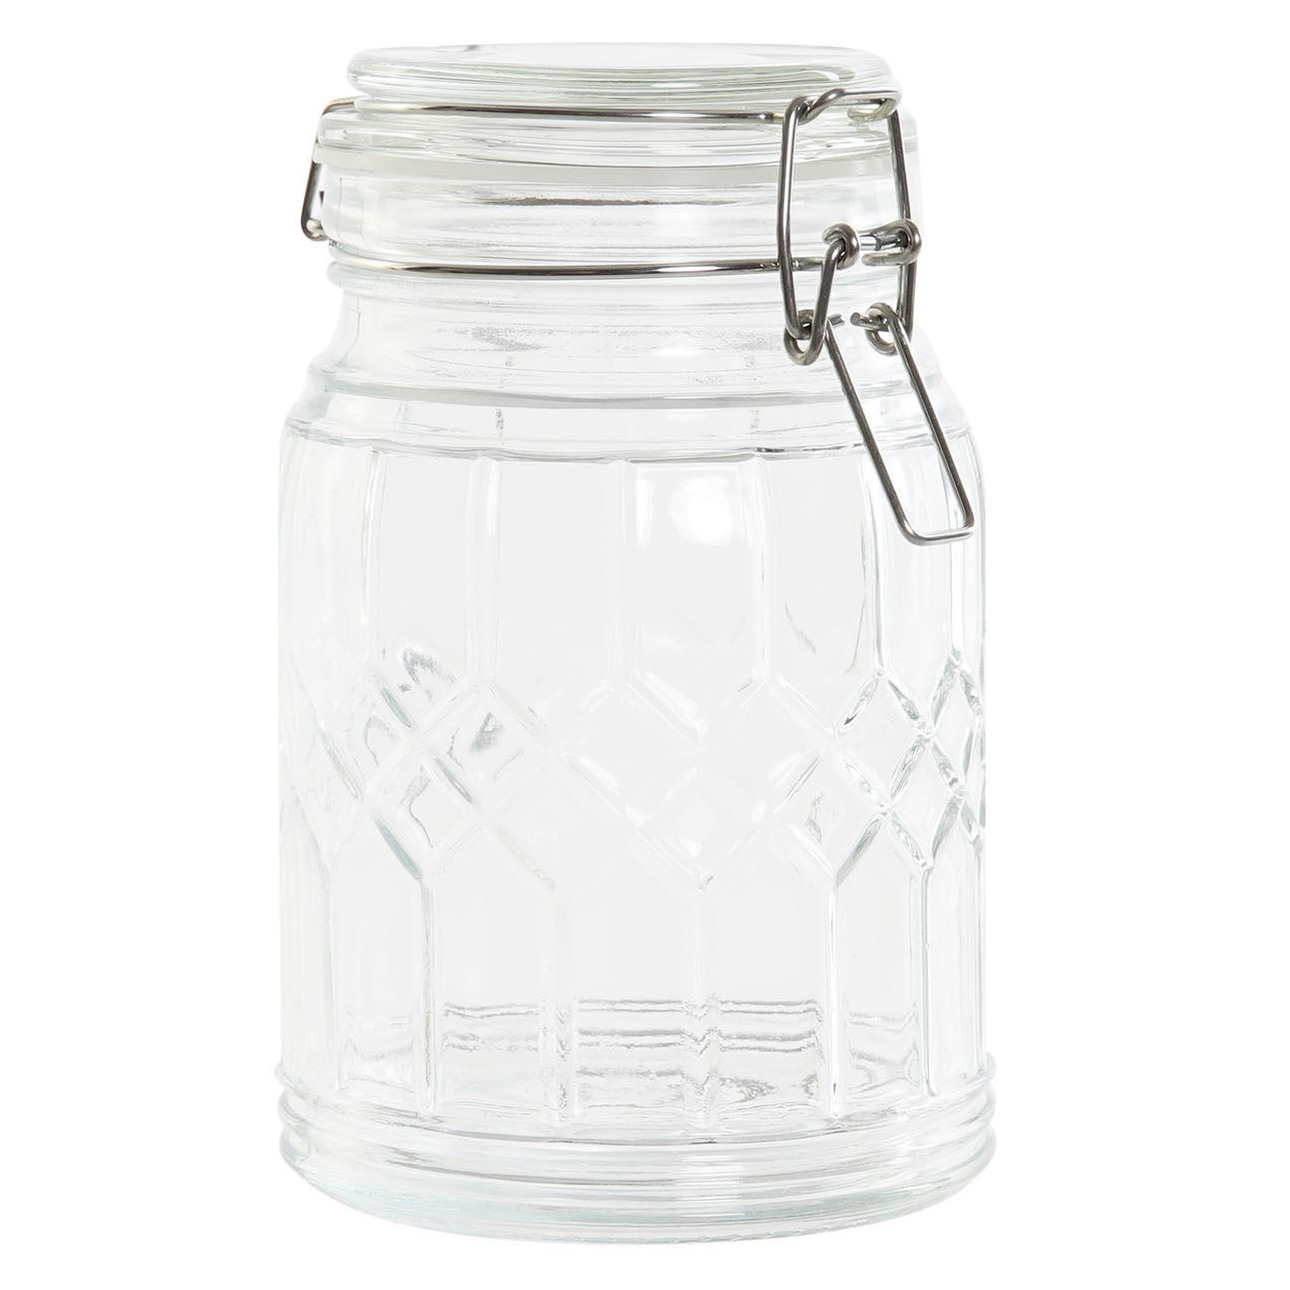 Voorraadpot-weckpot 710 ml glas met metalen beugelsluiting